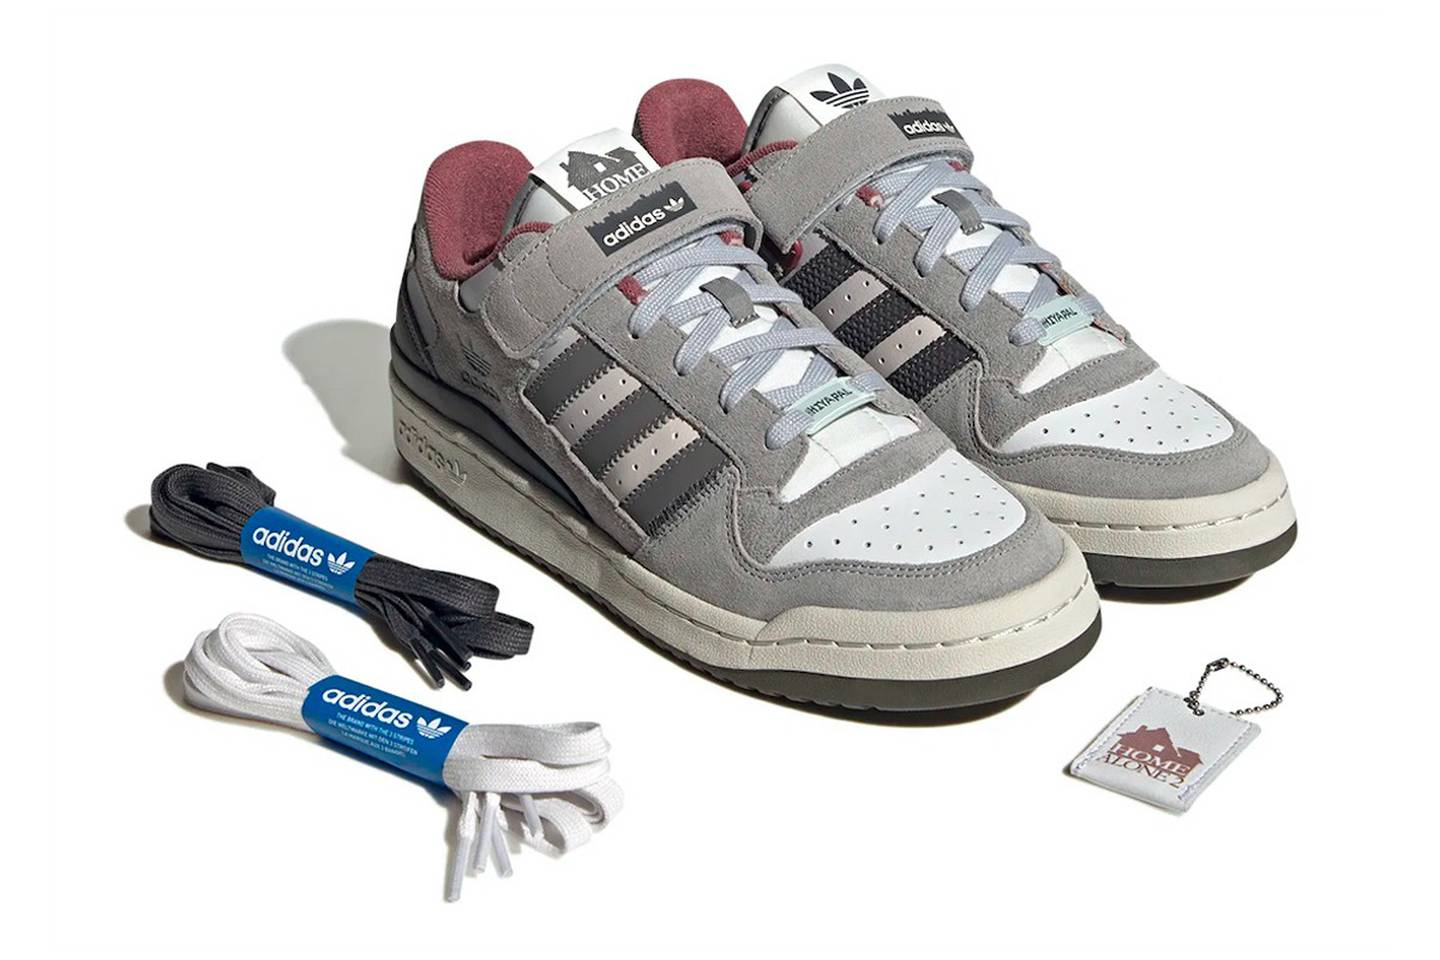 Adidas Forum Low Home Alone 2, las zapatillas de Mi Pobre Angelito 2